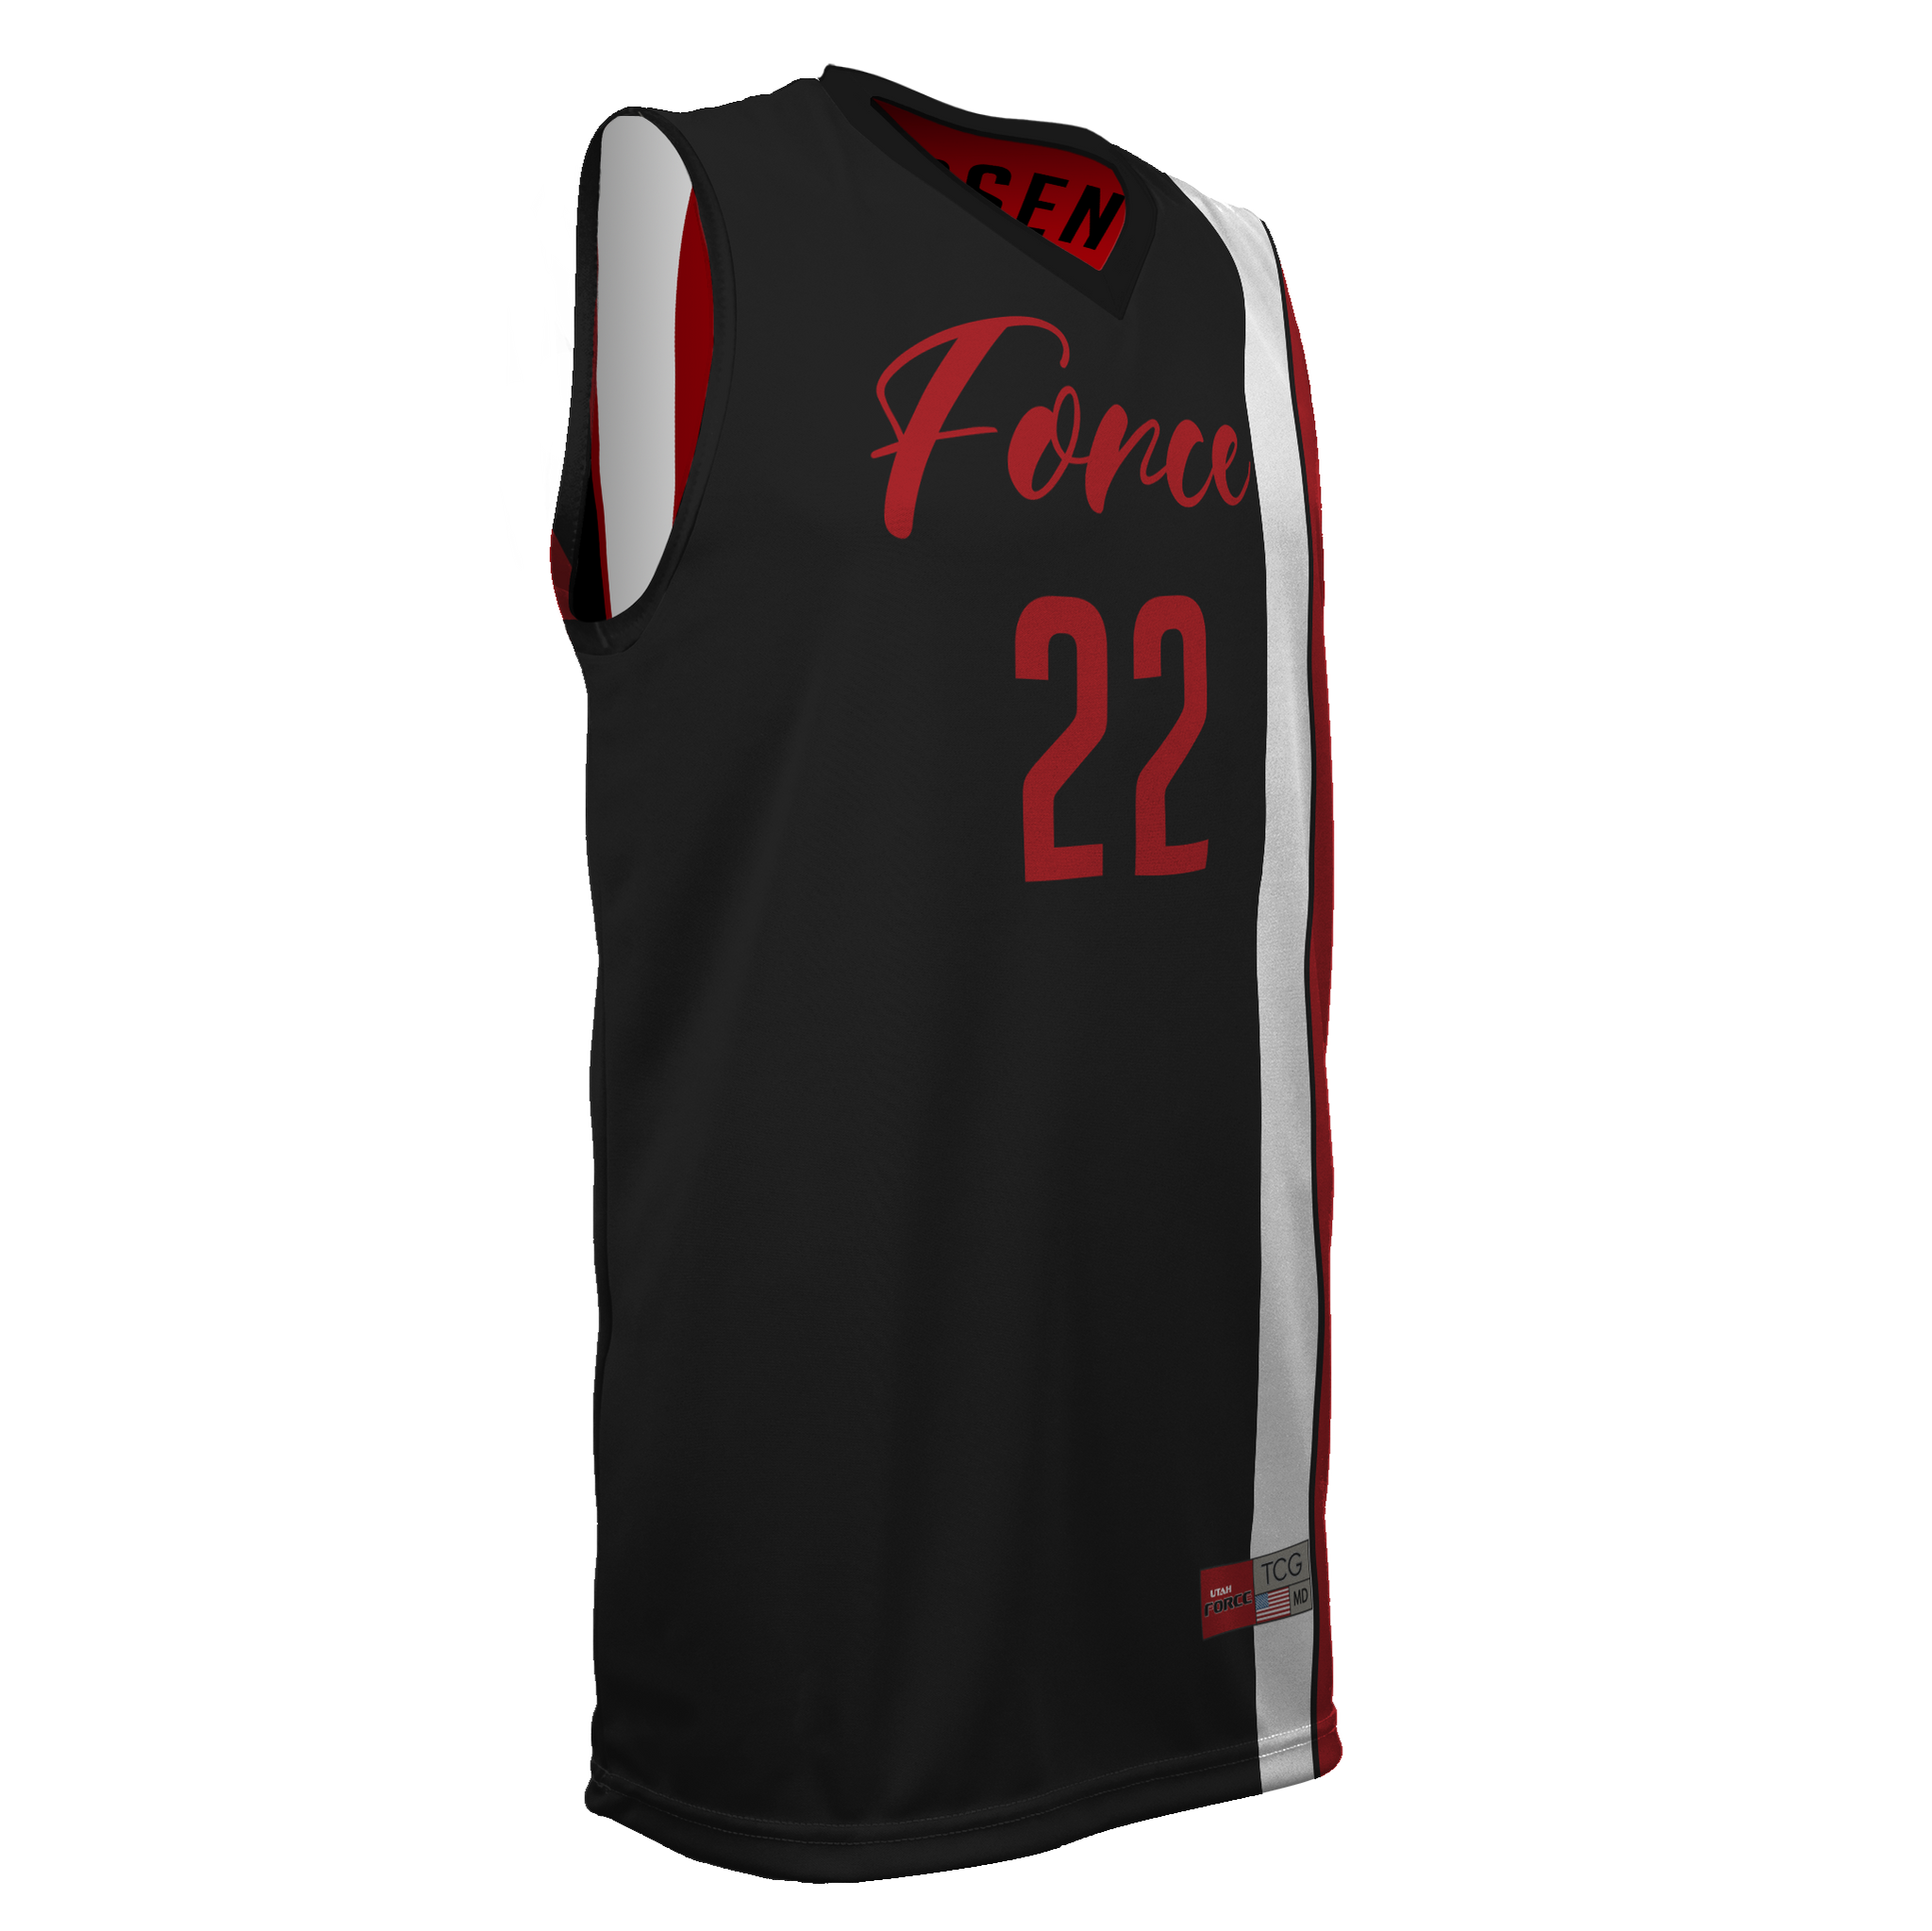 Force Jauzi - custom basketball jersey